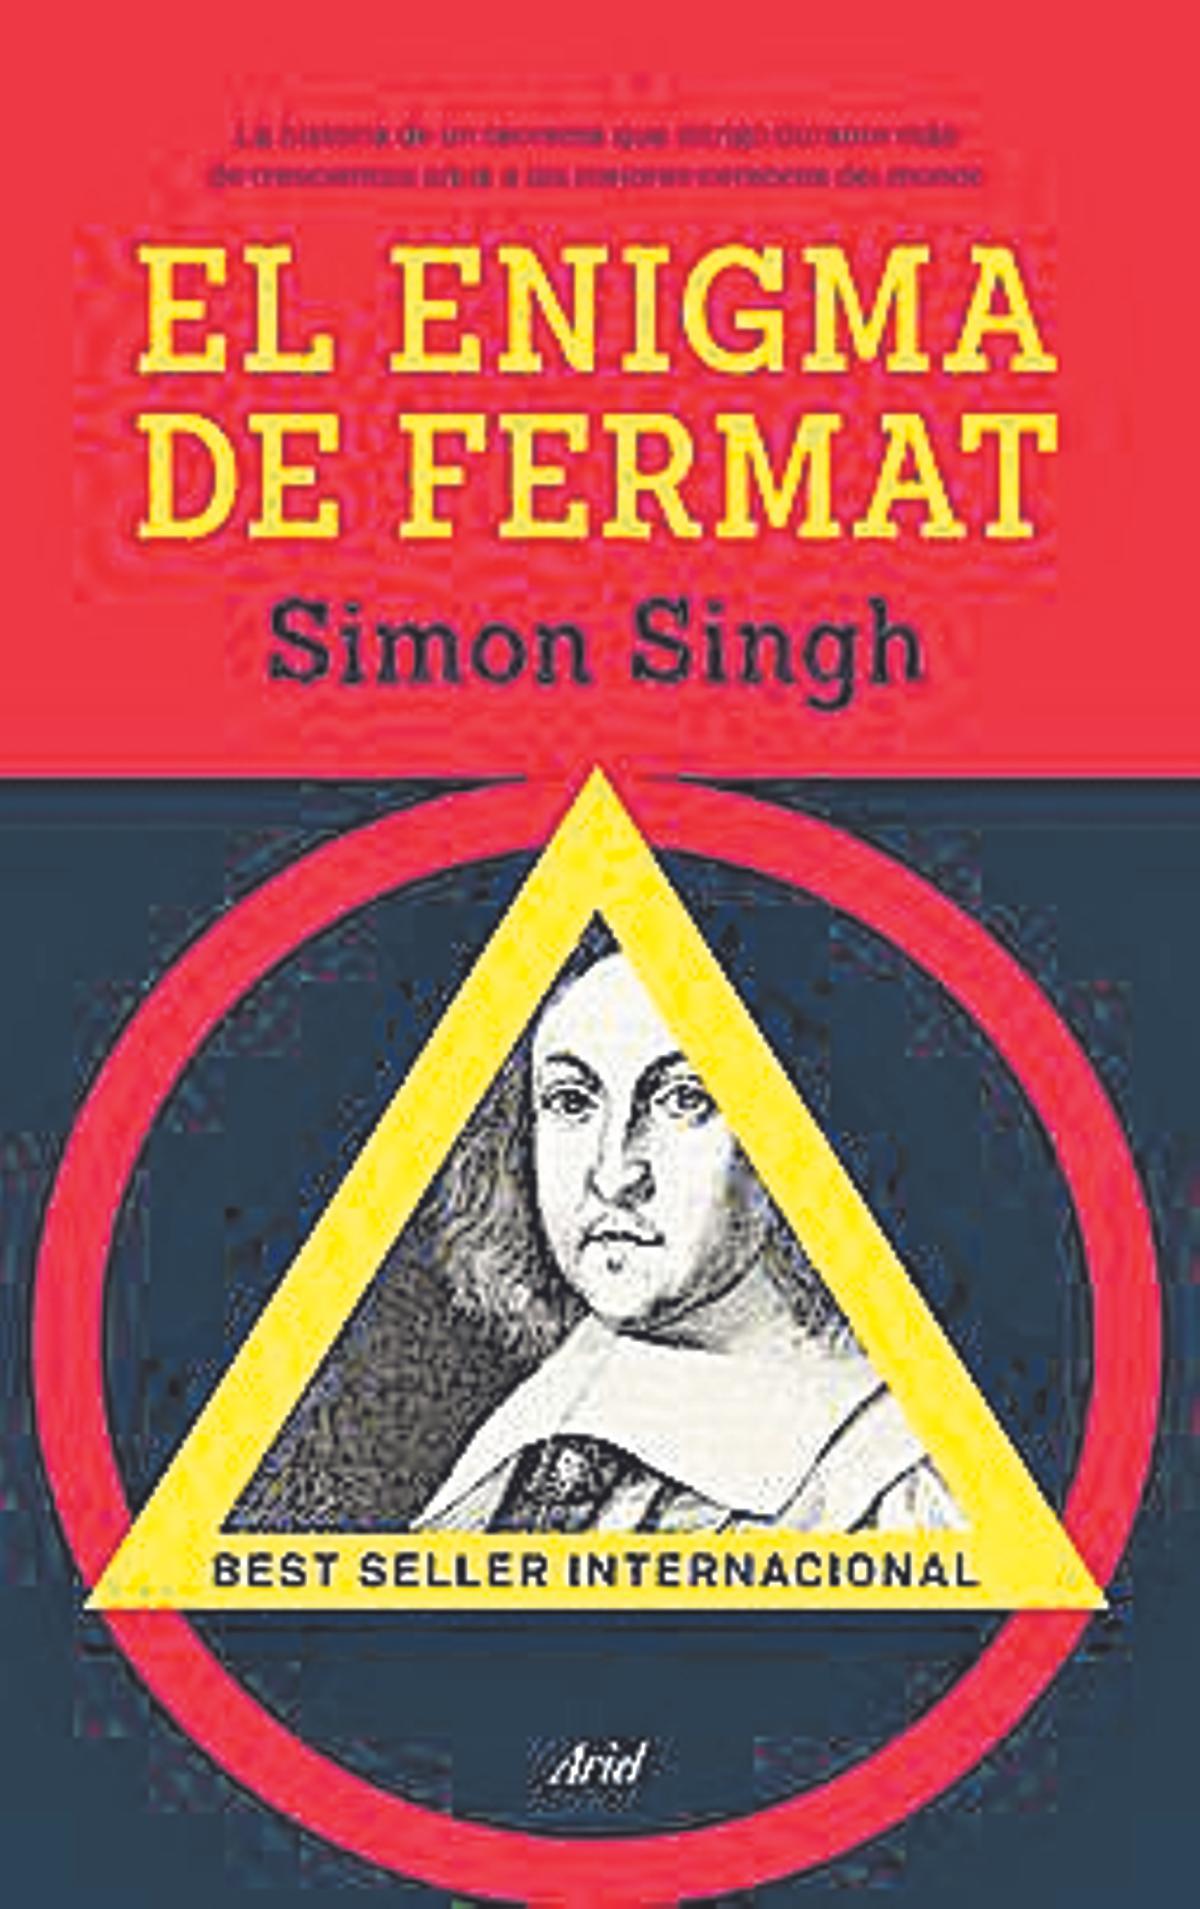 El enigma de Fermat, de Simon Singh. Editorial Ariel. 328 páginas, 14 euros.